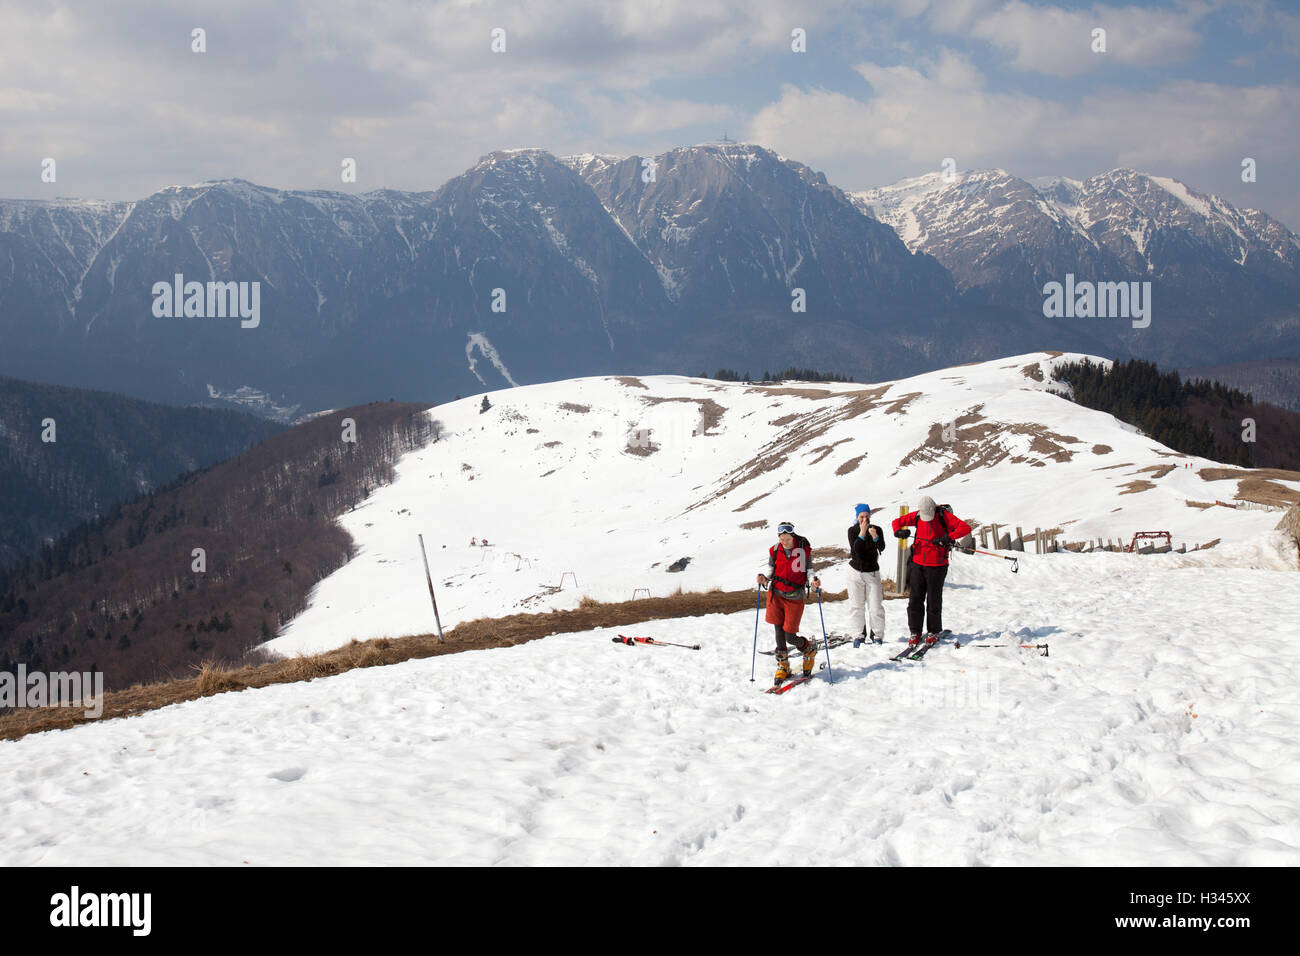 Les touristes sont vu skier sur les pentes de montagnes des Carpates Baiului Banque D'Images